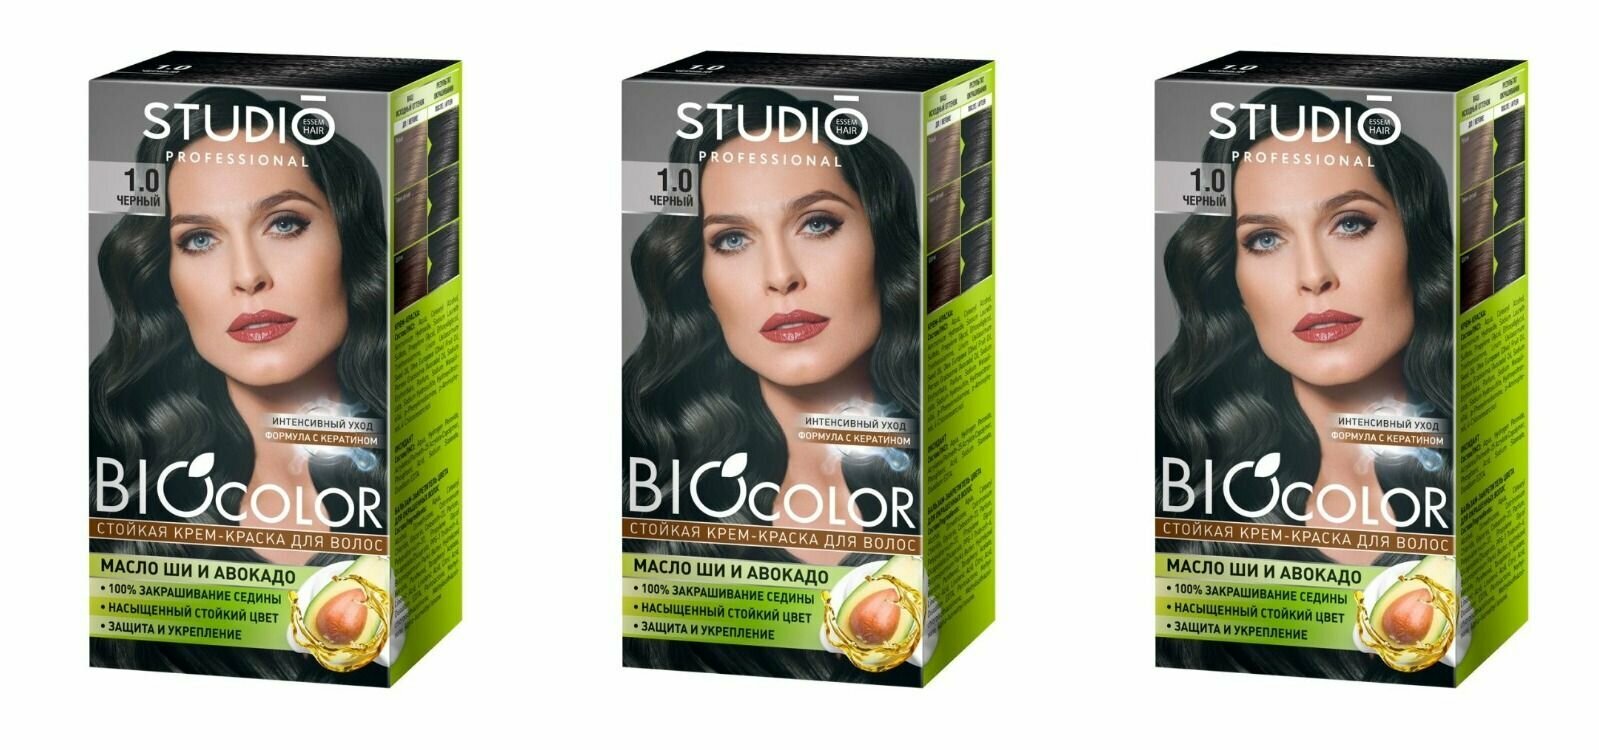 STUDIO PROFESSIONAL краска для волос Биоколор тон 1.0 черный - 3 штуки